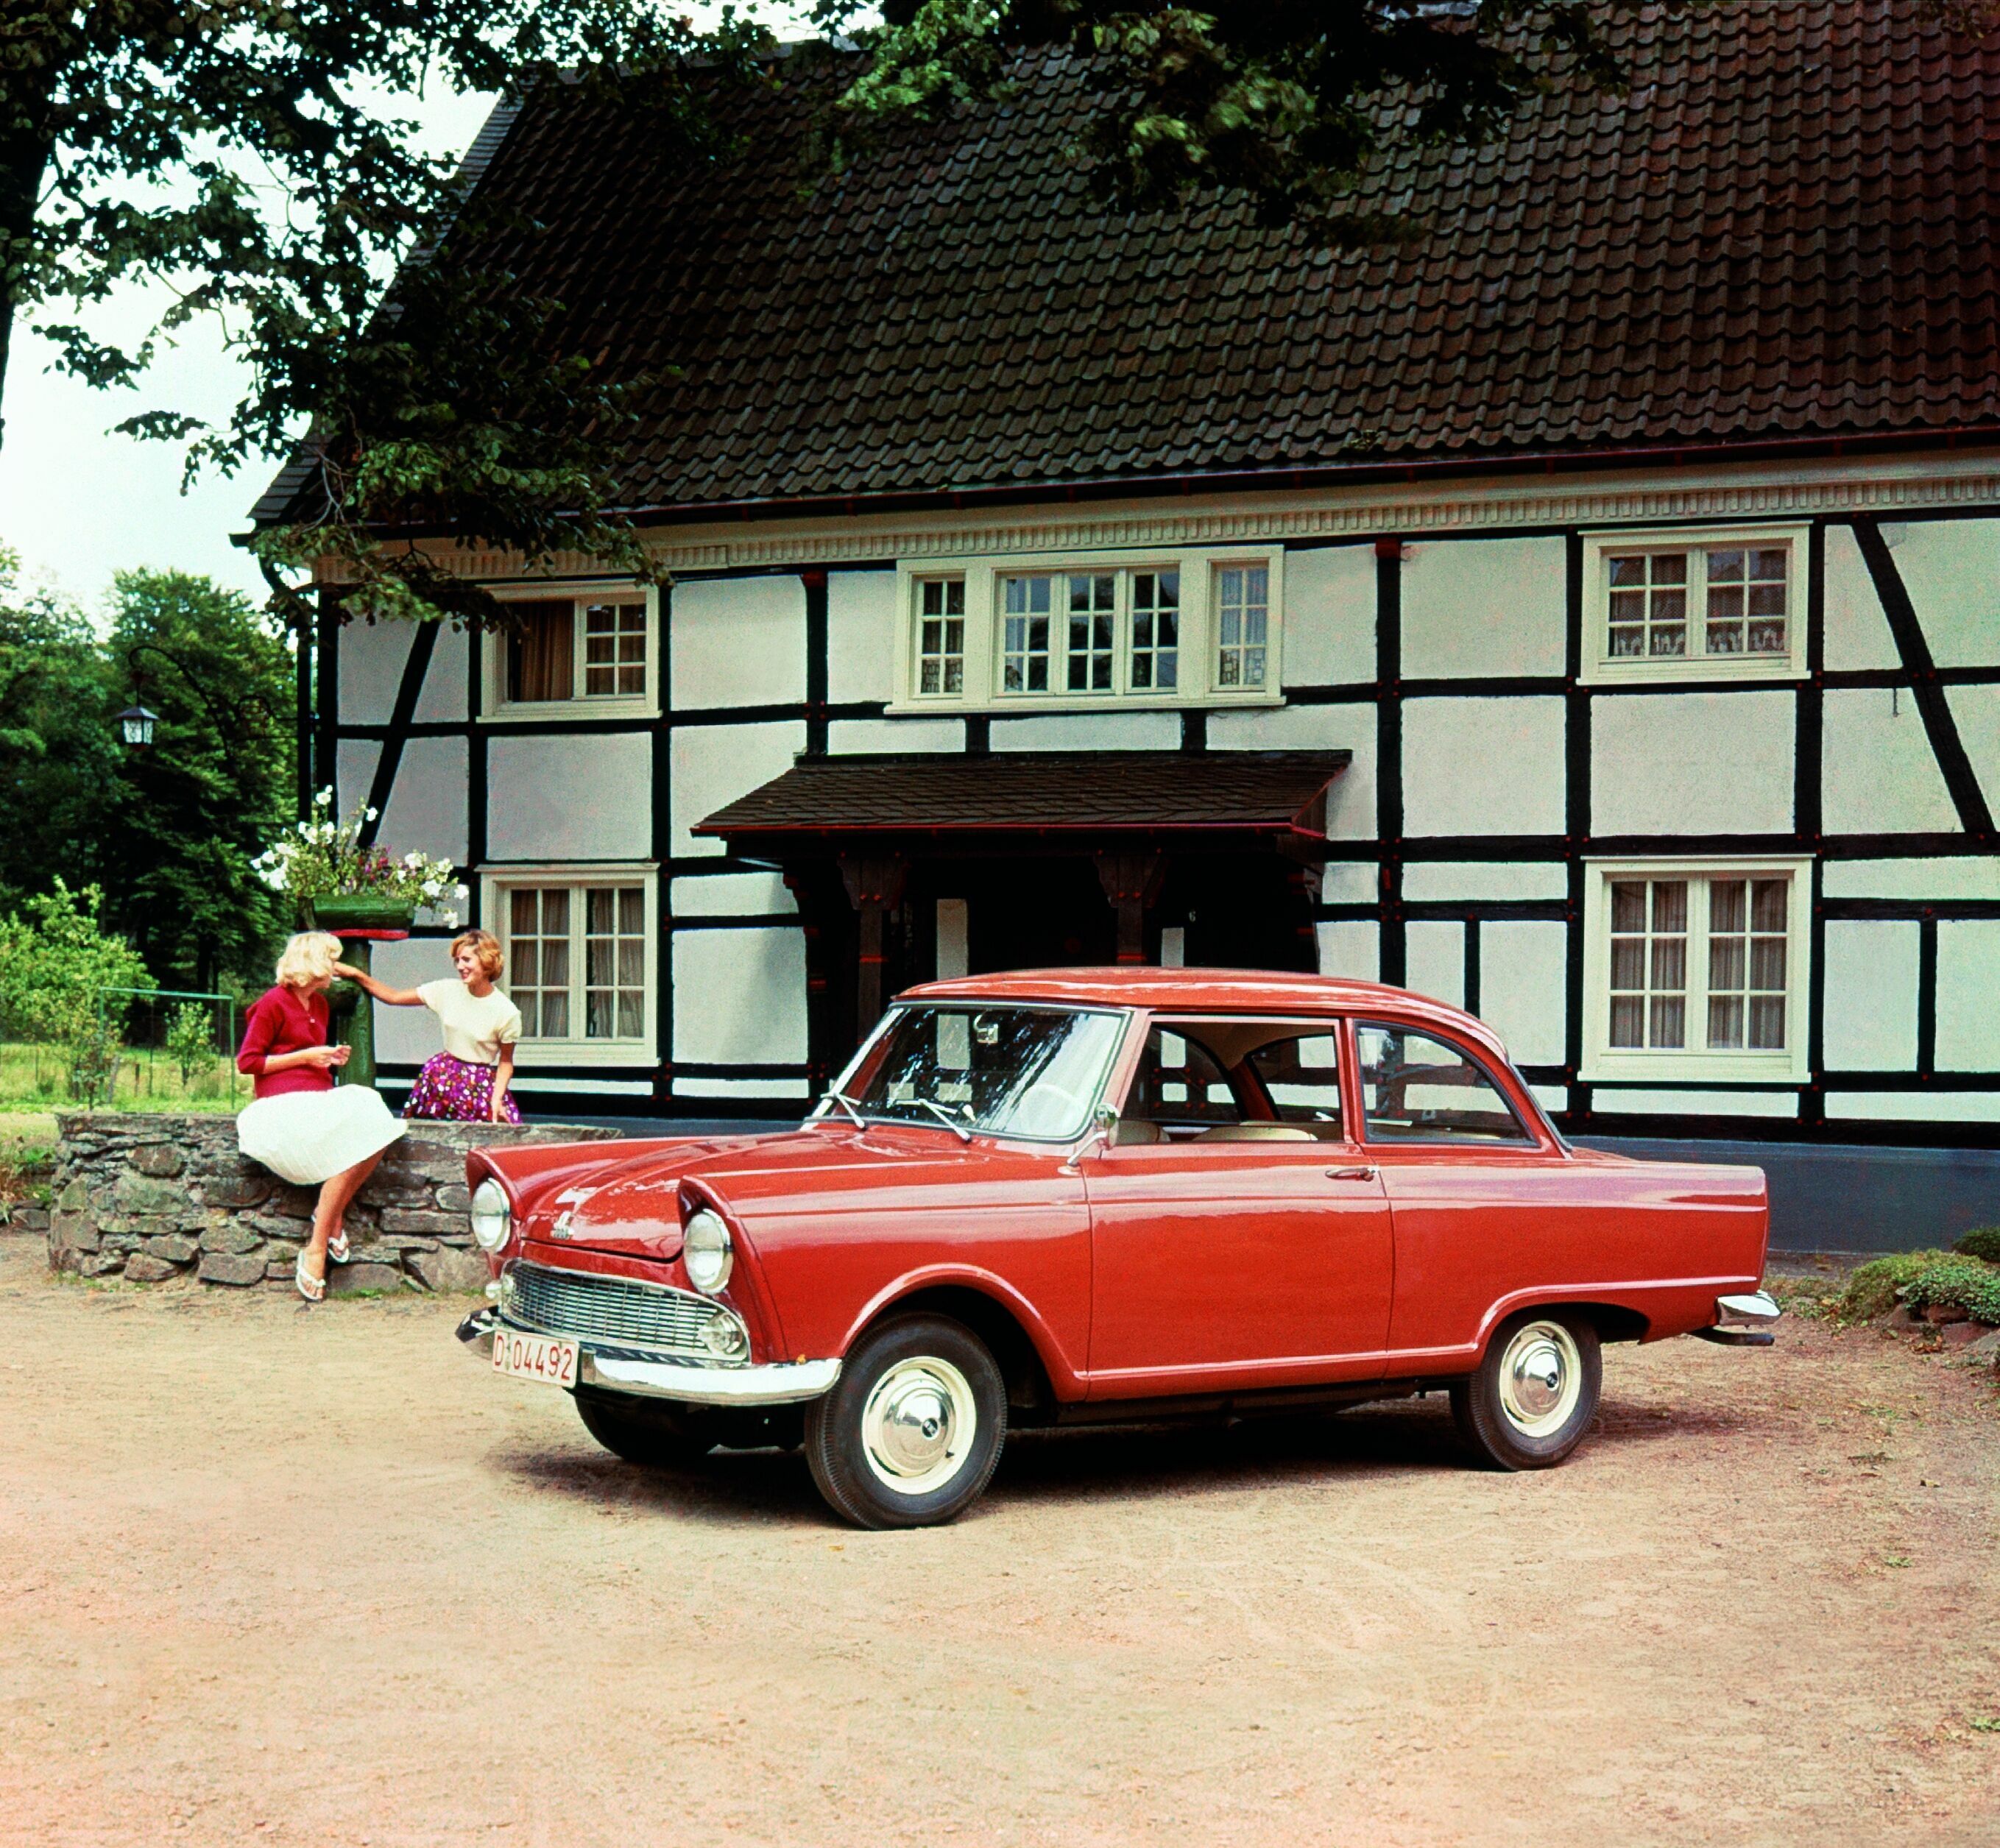 Vortrag im Audi museum mobile: Die Geschichte des Auto-Union-Werks